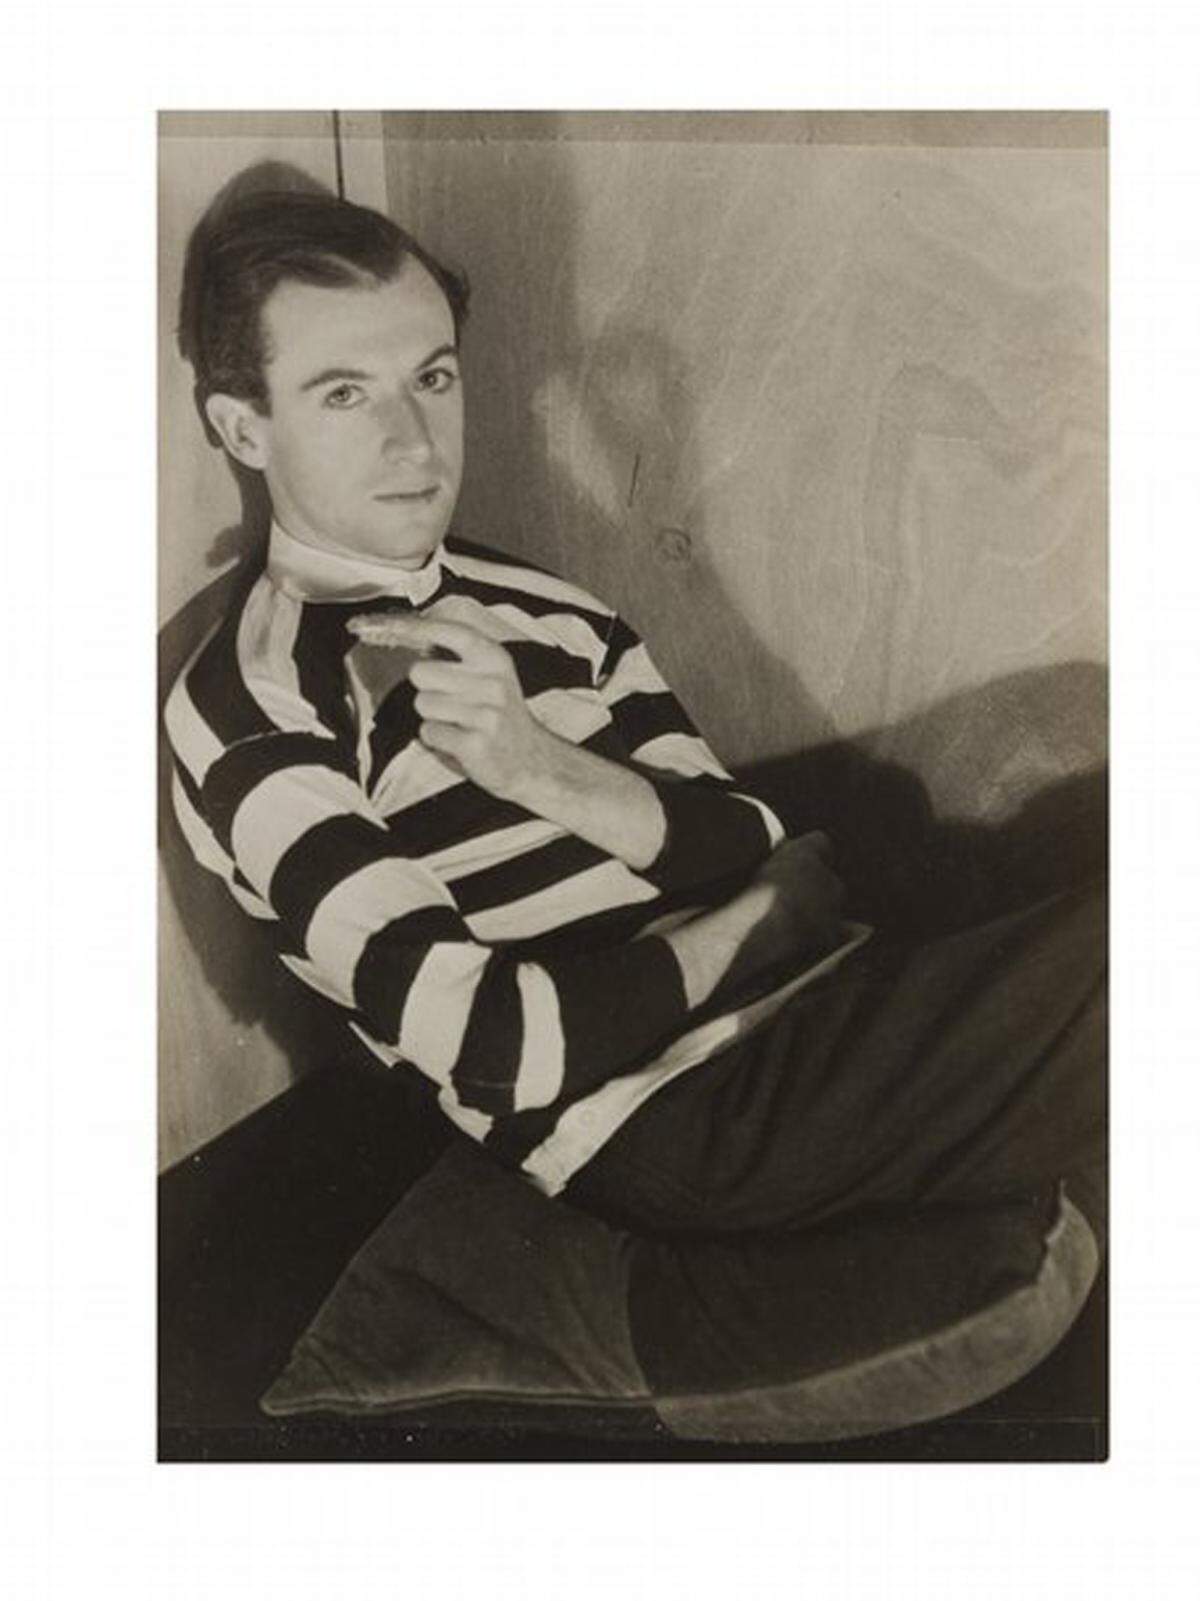 Starfotograf Cecil Beaton, der als Mode- und Porträtfotograf Ruhm erlangte, wurde die Ehre zu Teil, diesen Tag mit der Kamera festzuhalten. Cecil Beaton, fotografiert von Curtis Moffat, circa 1930.